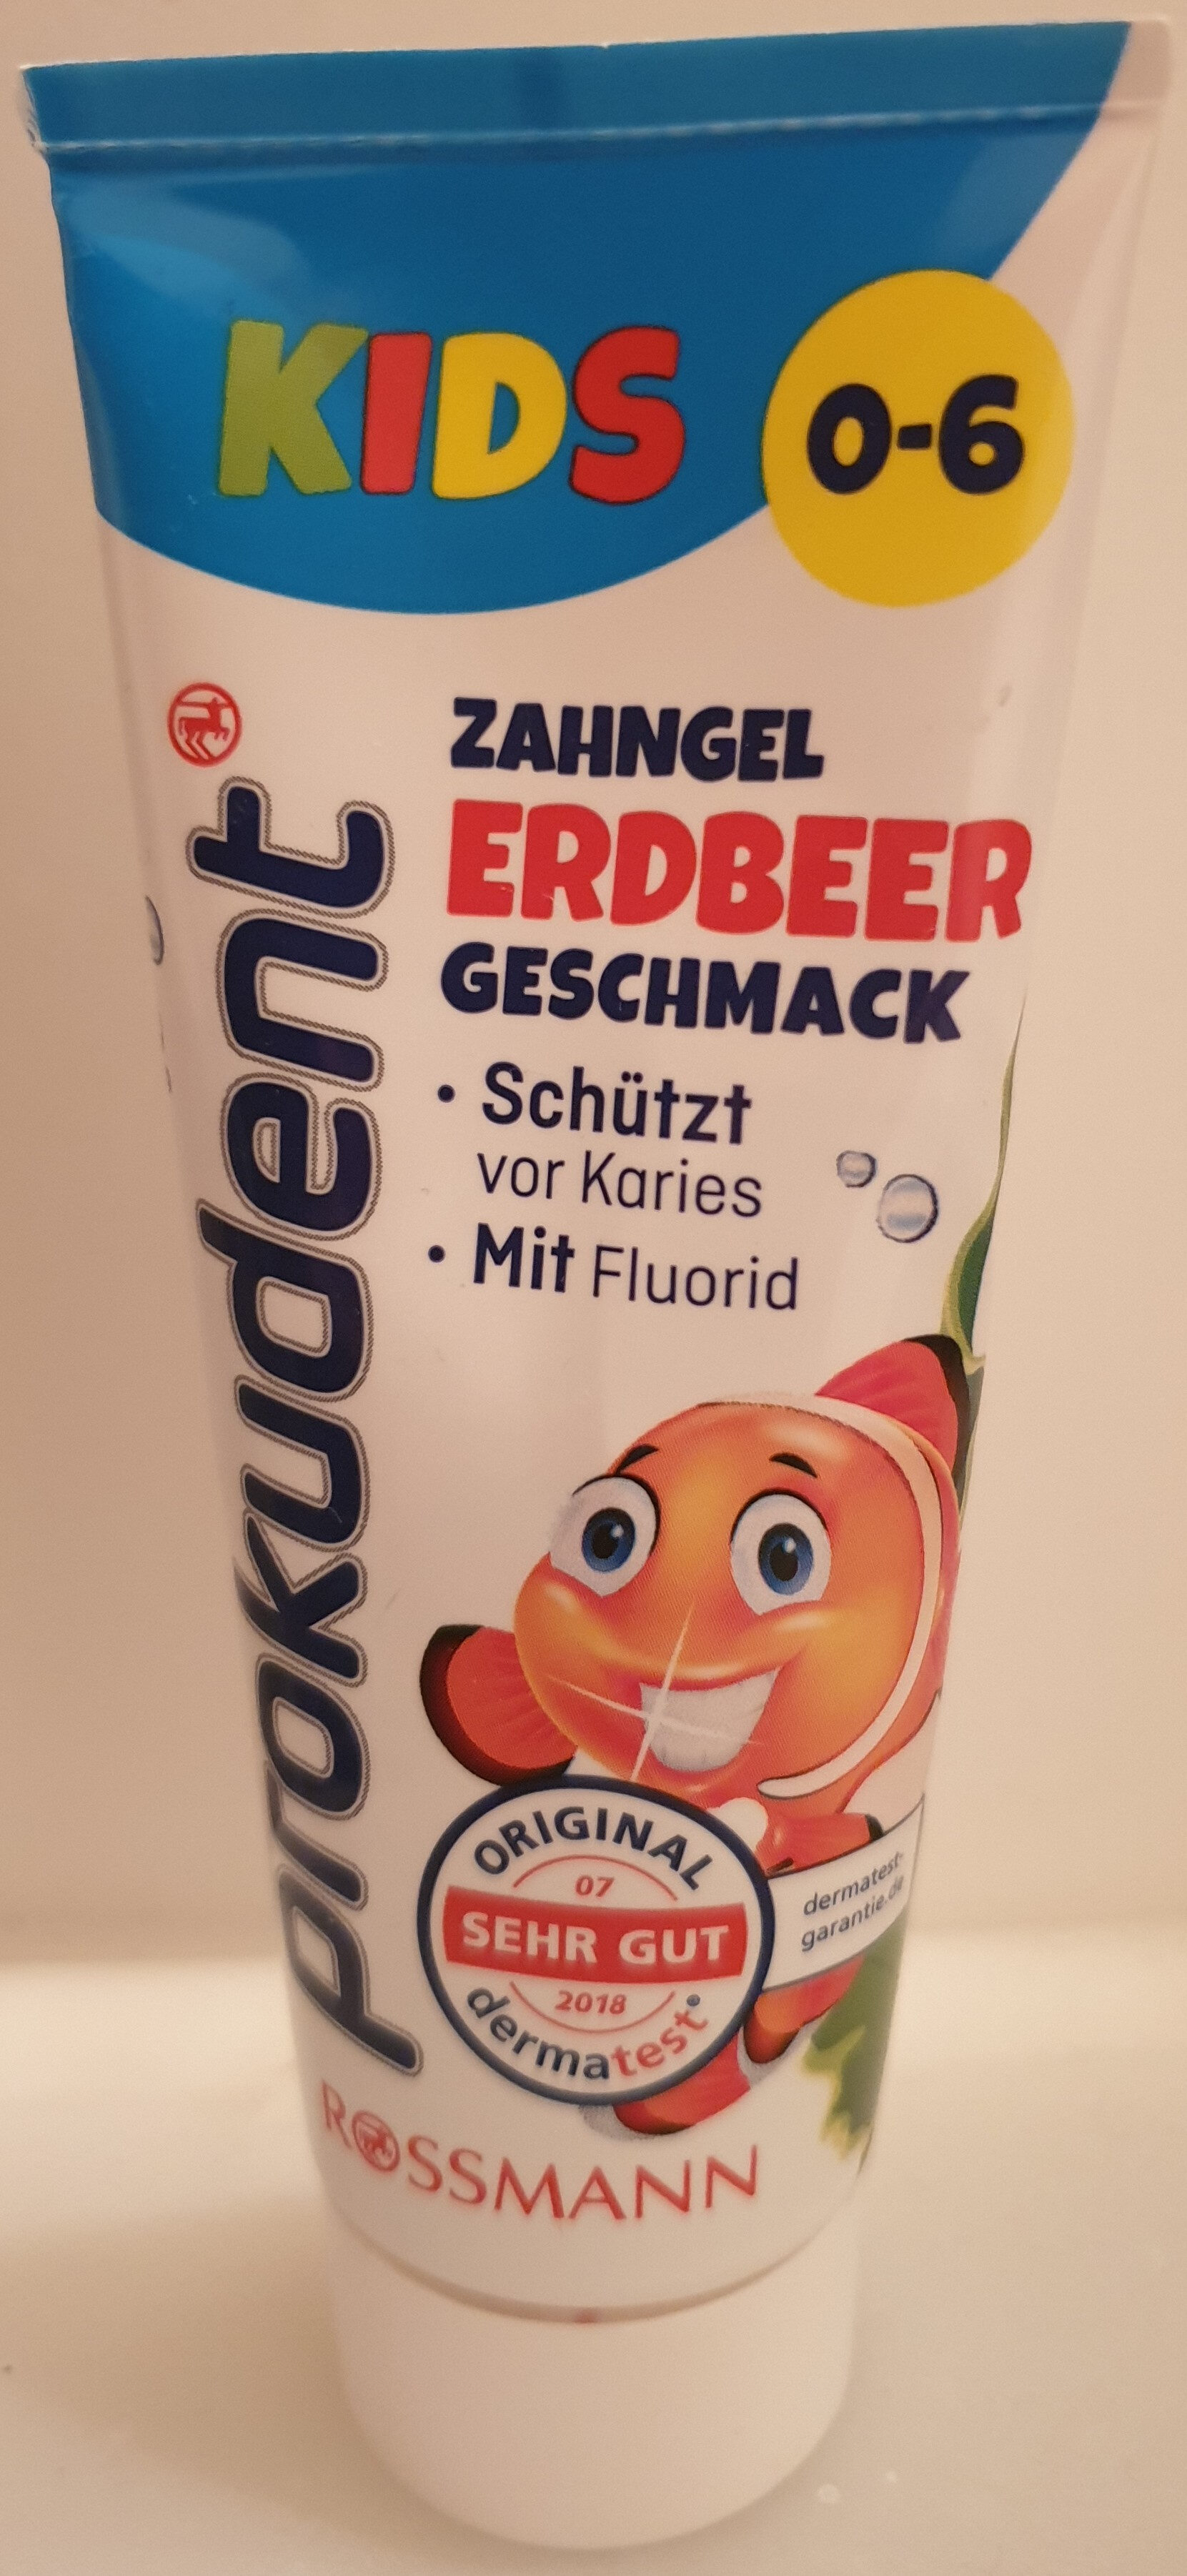 prokudent Kids Zahngel Erdbeer Geschmack - Product - de